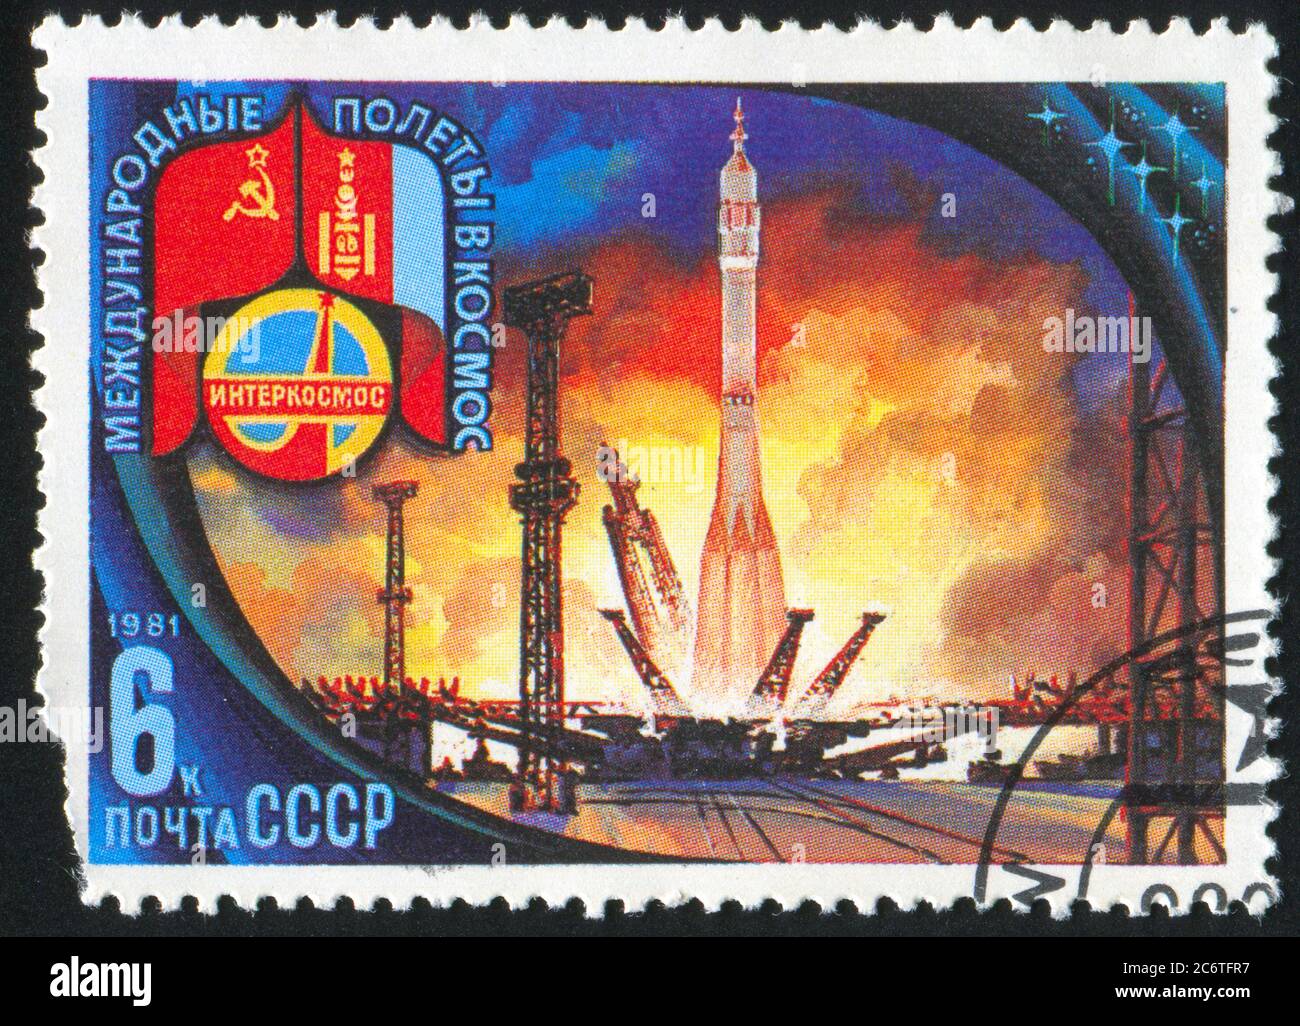 RUSSIE - VERS 1981 : timbre imprimé par la Russie, montre Lift-Off, base de Baikonour, vers 1981 Banque D'Images